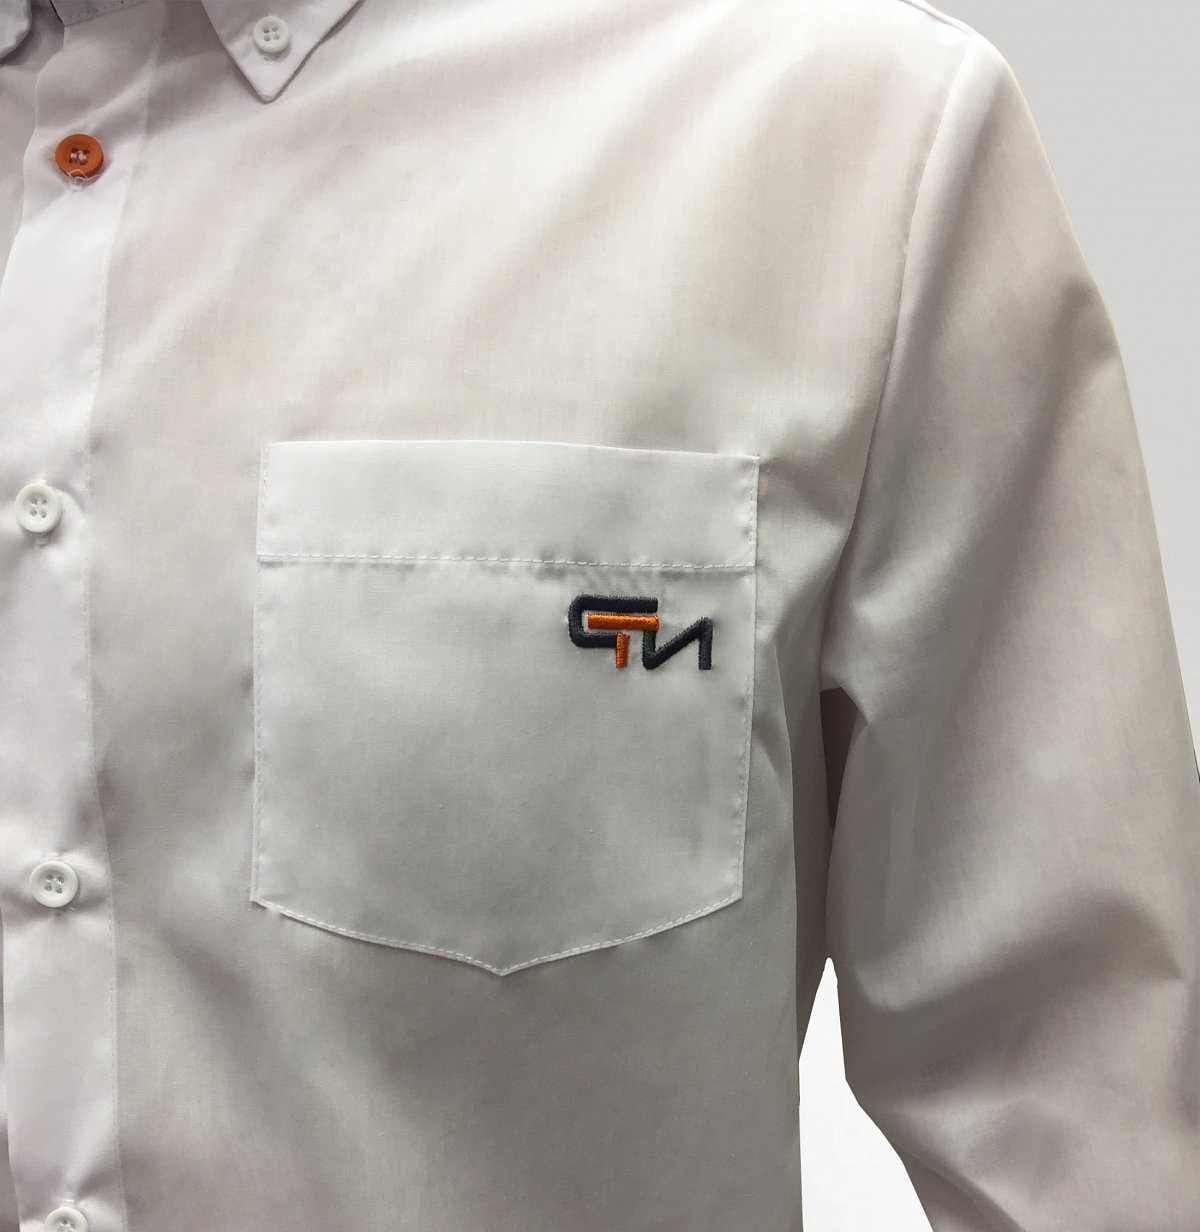 Пошив рубашек - пример модели: белая рубашка с логотипом